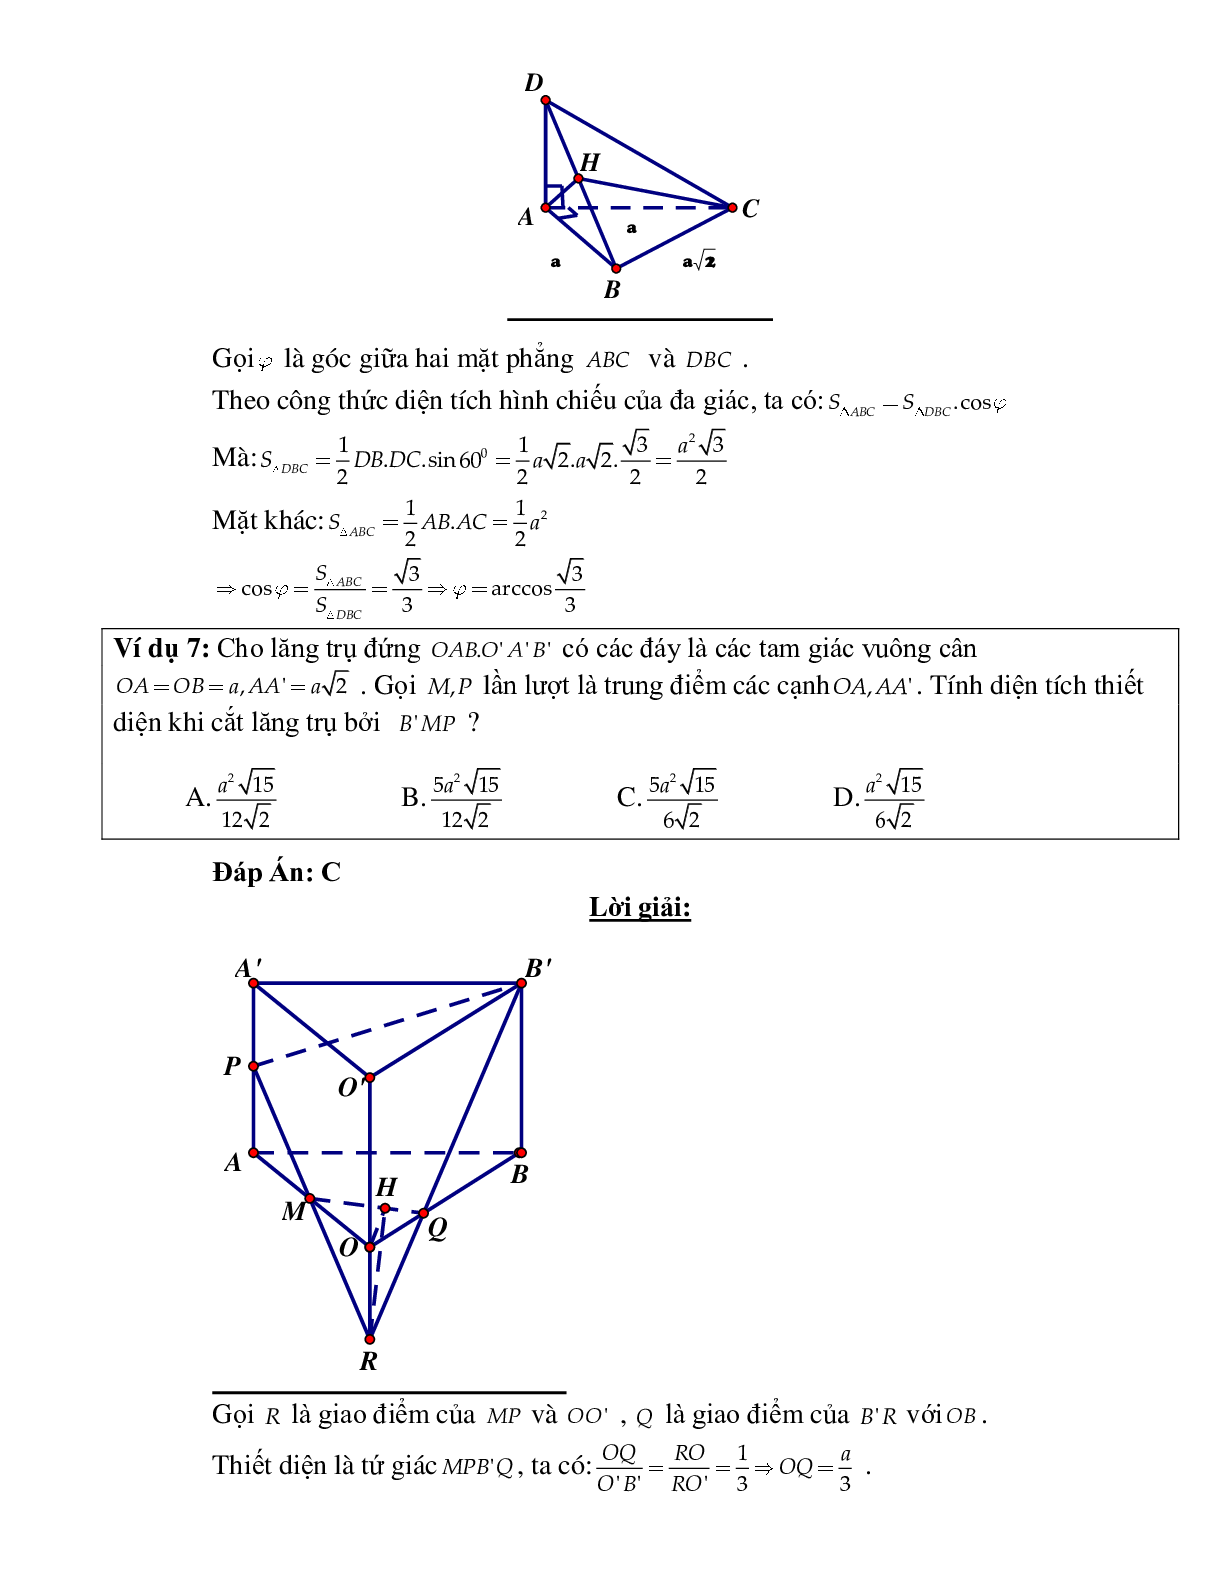 Bài tập Toán hình 11 Bài 4 có đáp án: Hai mặt phẳng vuông góc (trang 6)